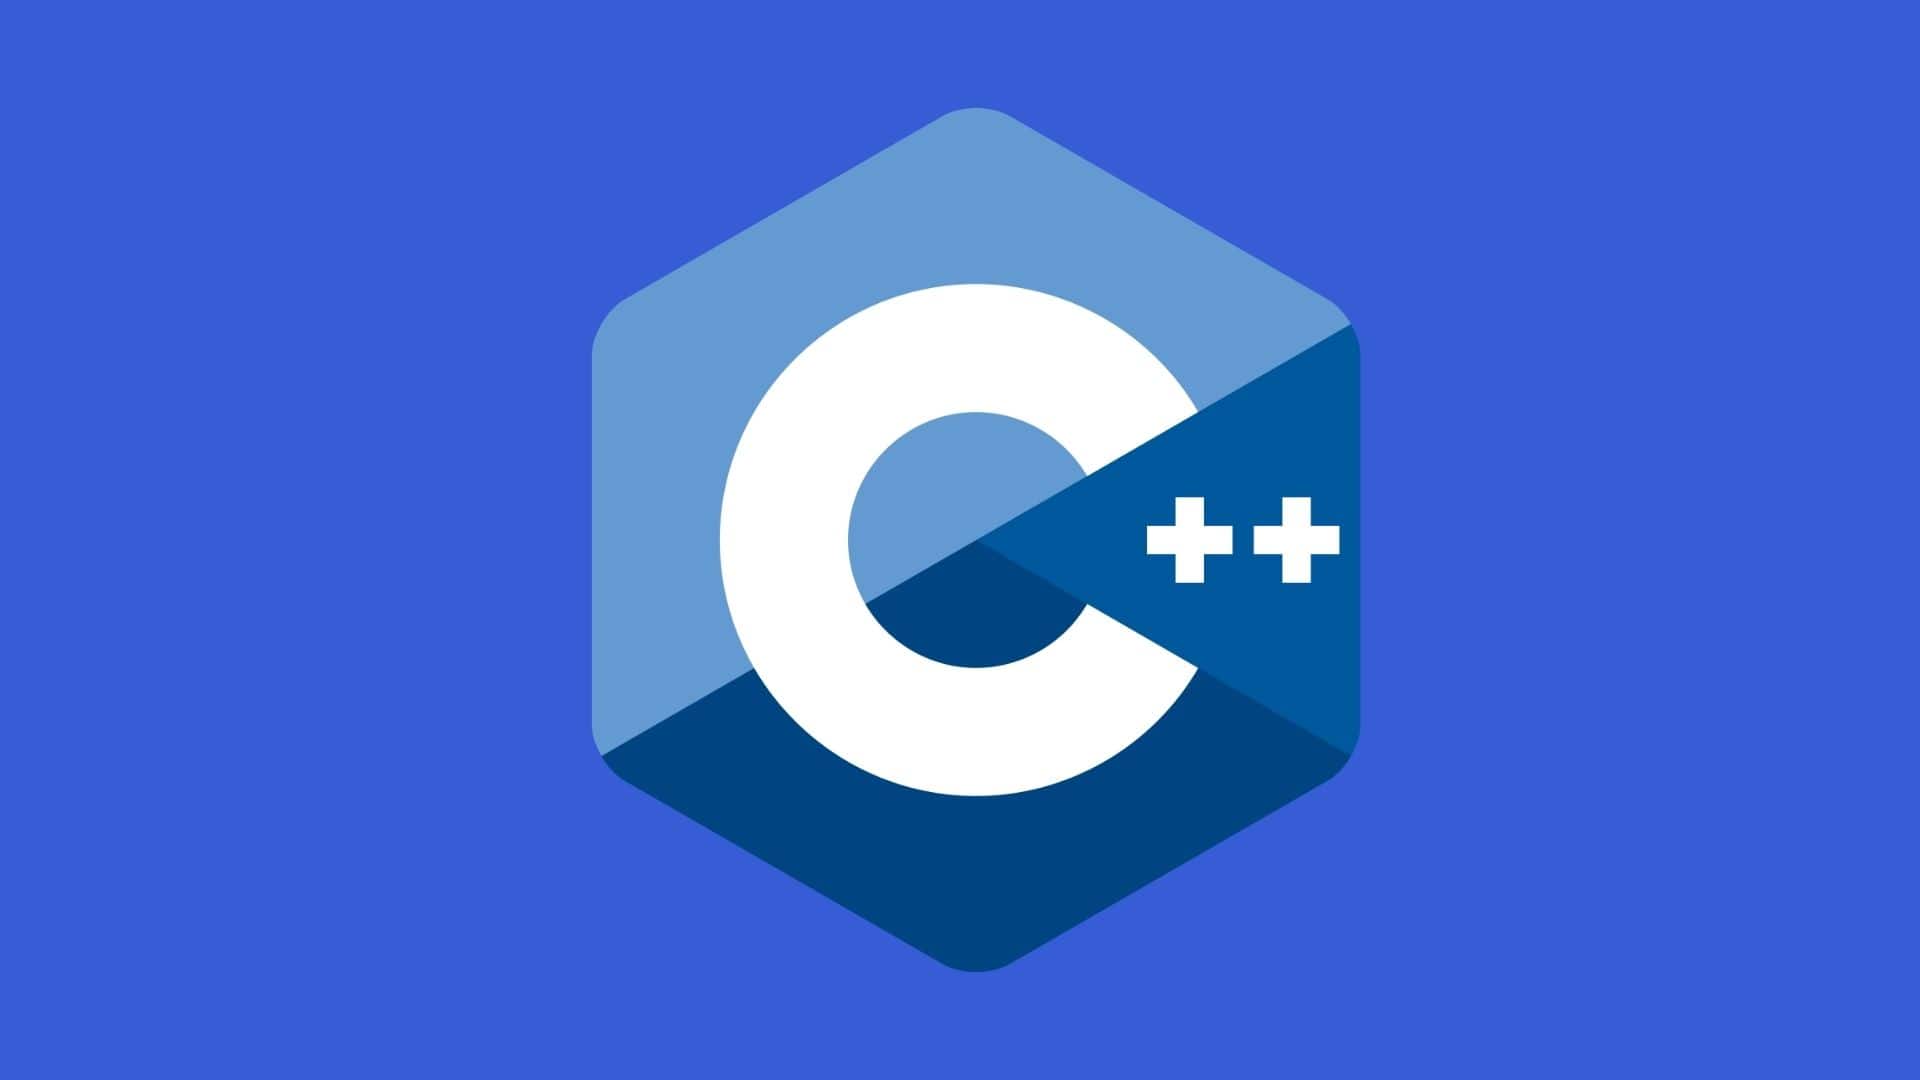 C/C++ Programming Language